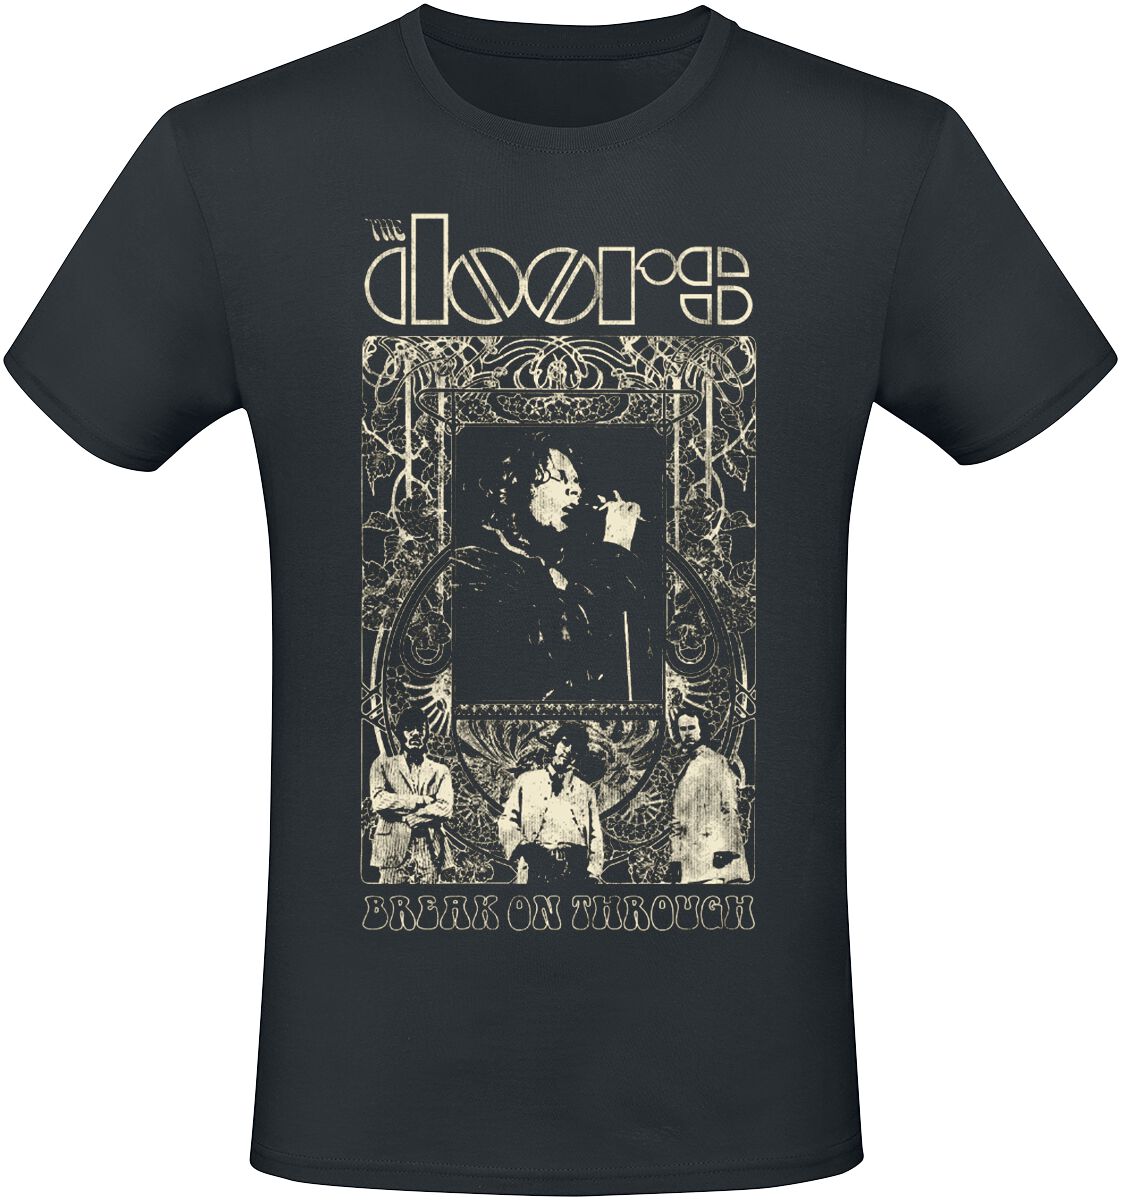 The Doors T-Shirt - Break On Through - M - für Männer - Größe M - schwarz  - Lizenziertes Merchandise!